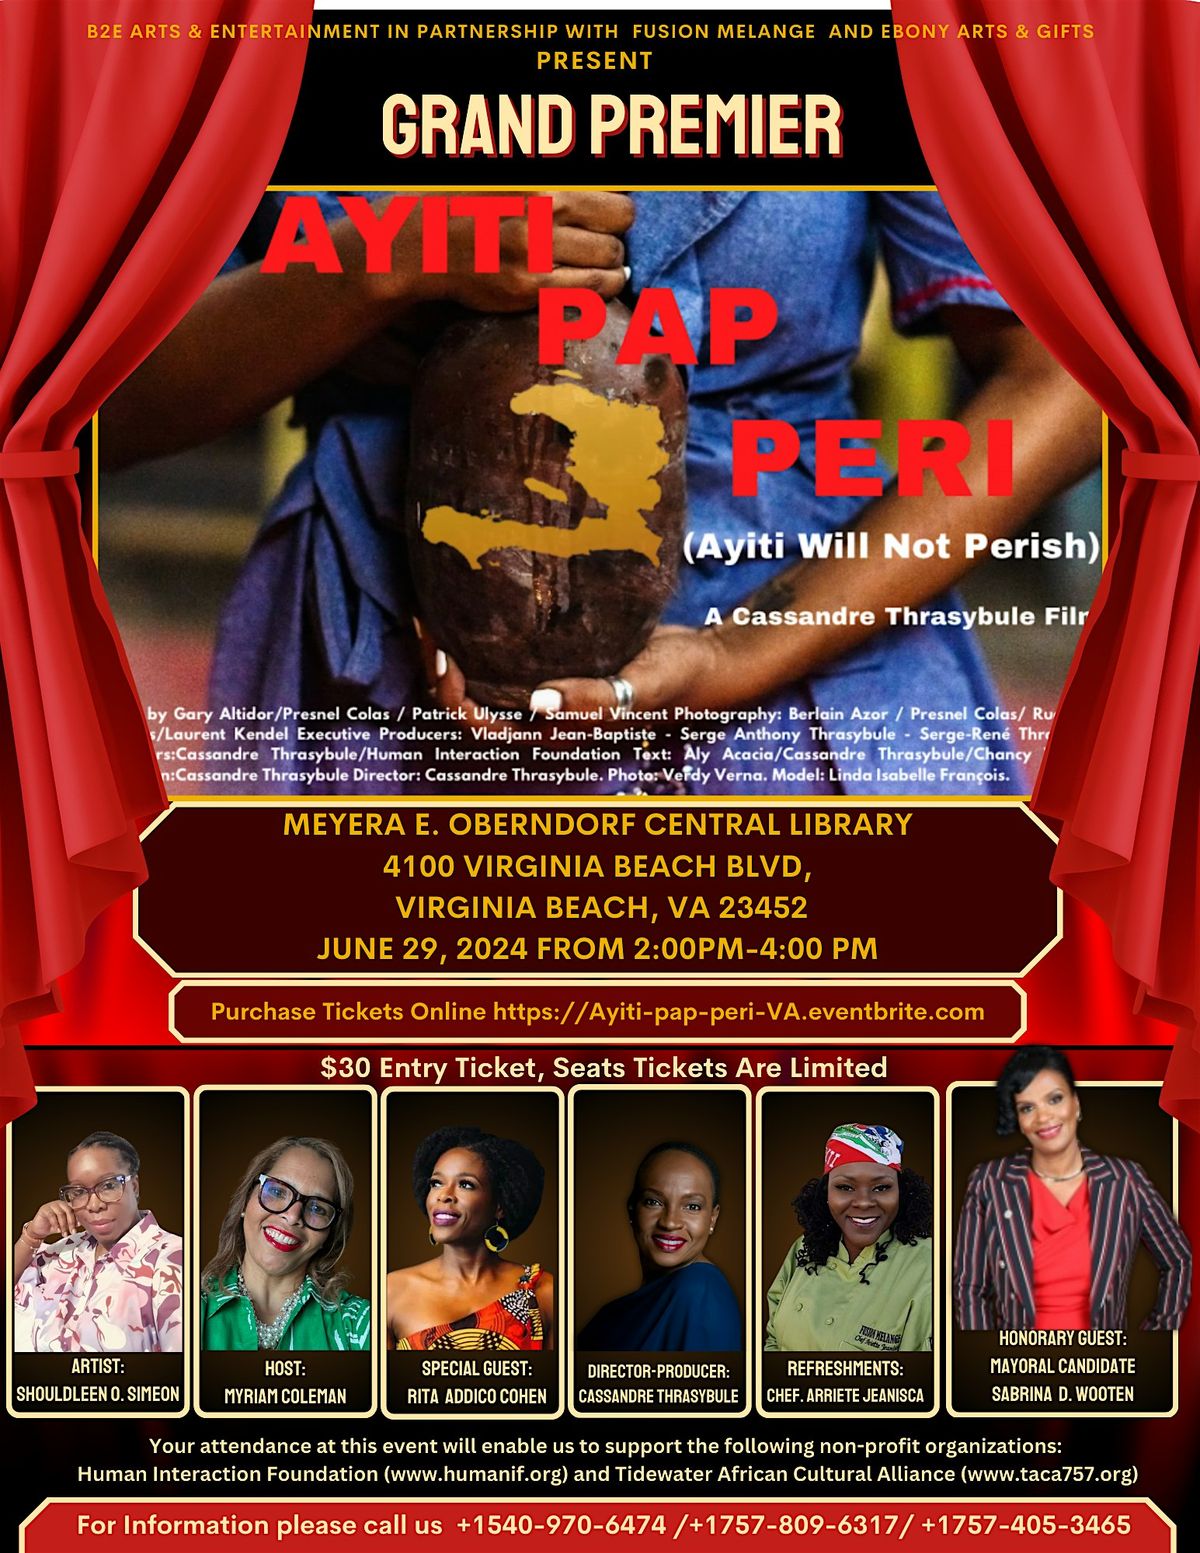 Grand Premier of Ayiti Pap Peri (Ayiti will not Perish) Movie in Virginia Beach, VA.